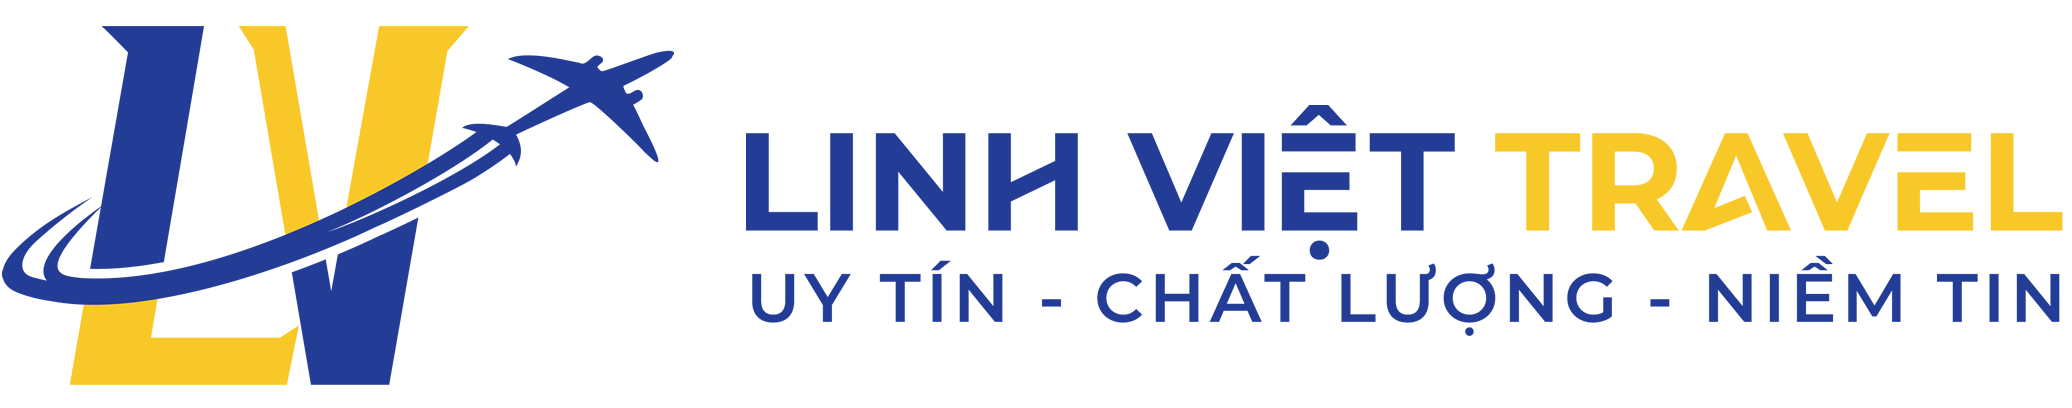 Linh Viet Travel - CÔNG TY TNHH LINH VIỆT TRAVEL